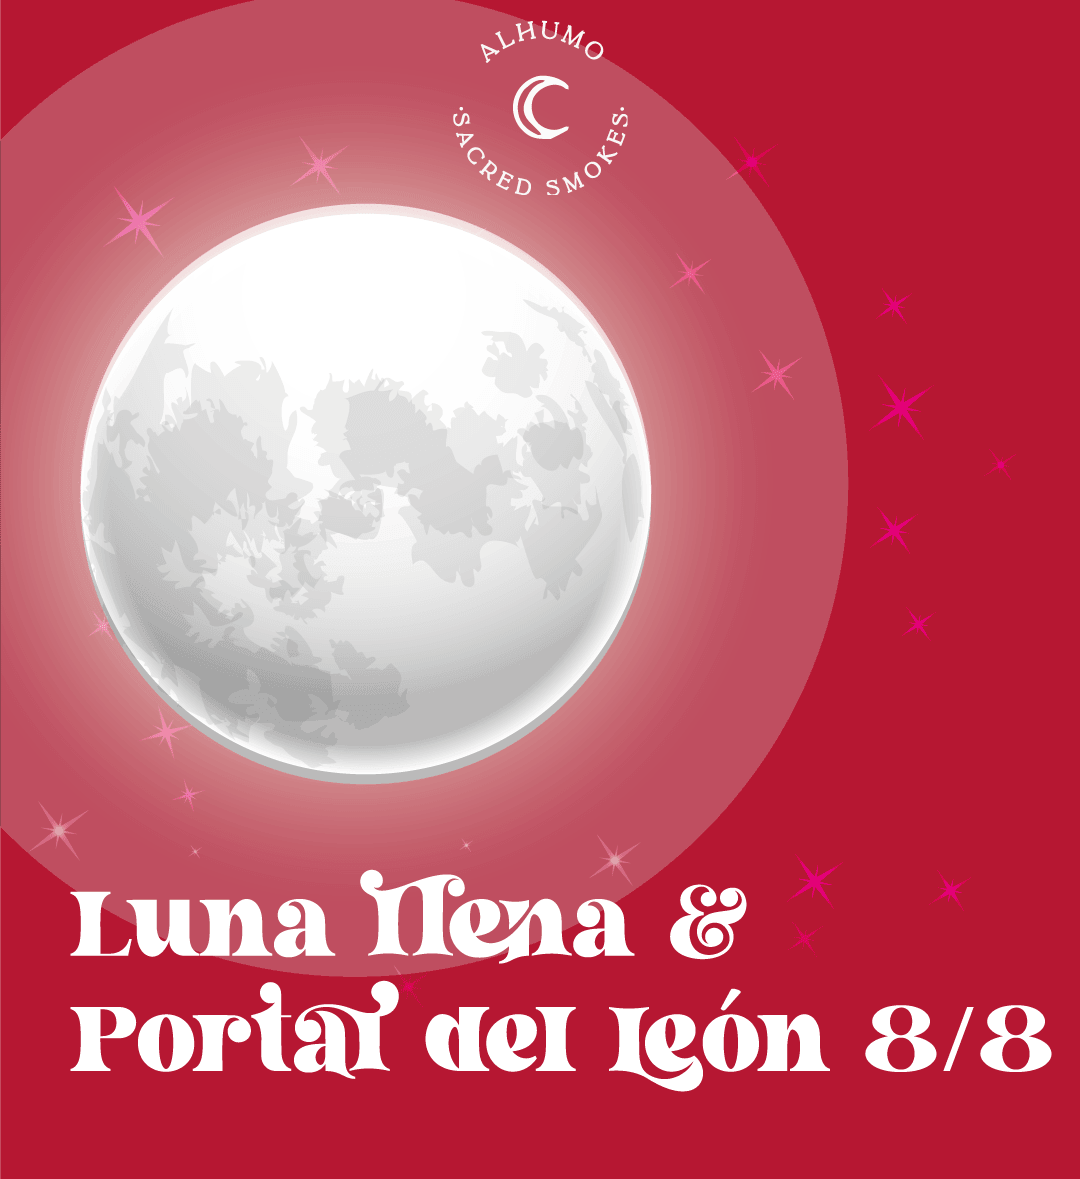 Qué energía trae la luna llena de agosto y qué significa el portal del Leon 8/8 - Alhumo Sacred Smokes